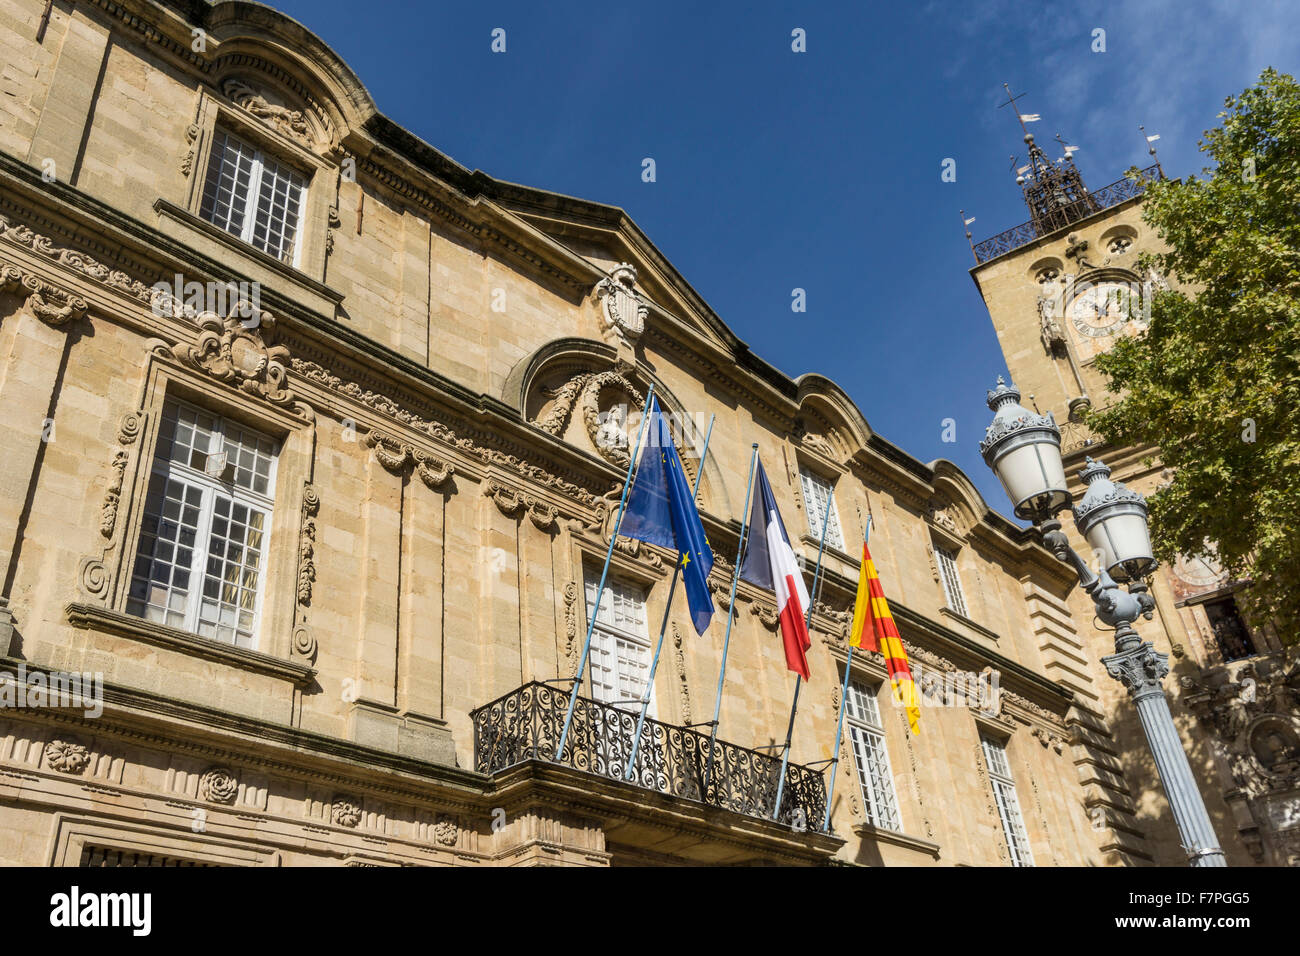 Town Hall, Hotel de Ville, Clock Tower, Aix-en-Provence, Bouche du Rhone, Provence, France Stock Photo